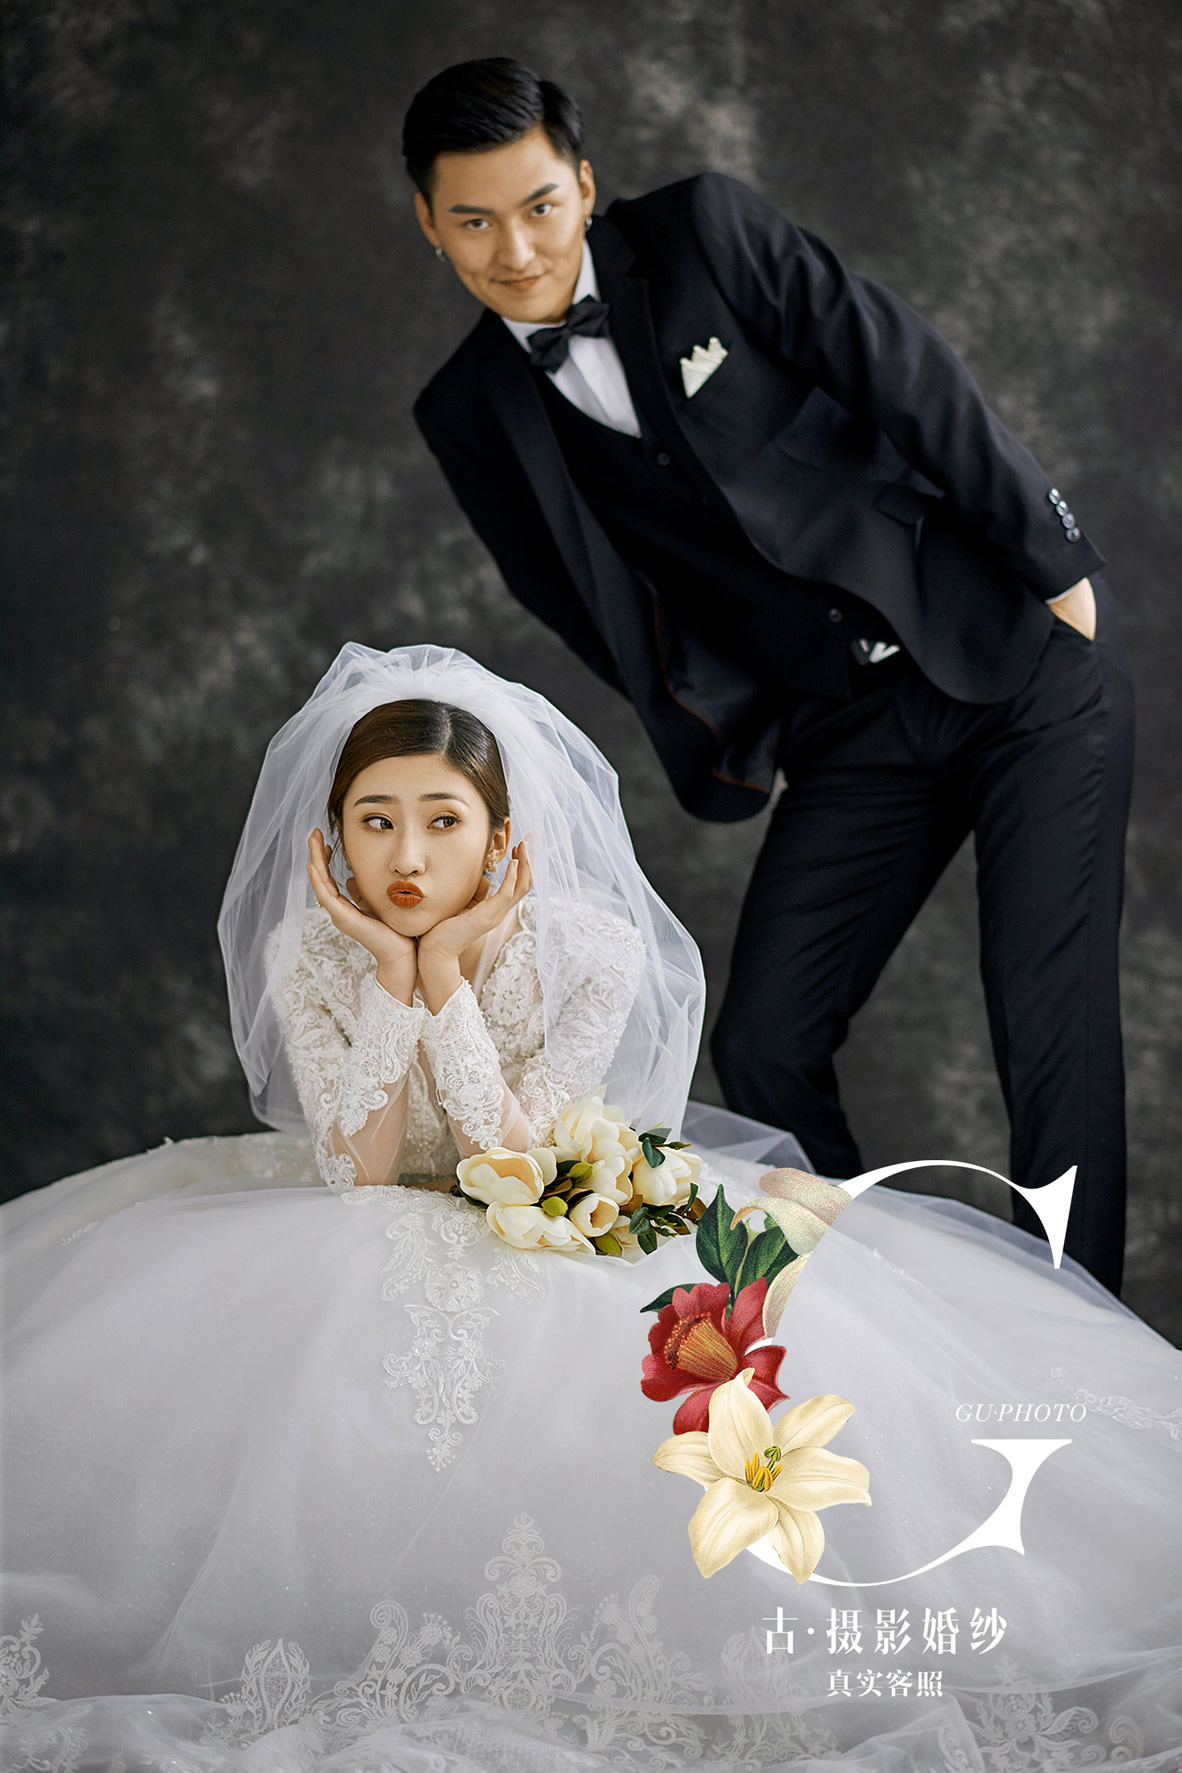 韩先生 赵小姐 - 每日客照 - 古摄影婚纱艺术-古摄影成都婚纱摄影艺术摄影网